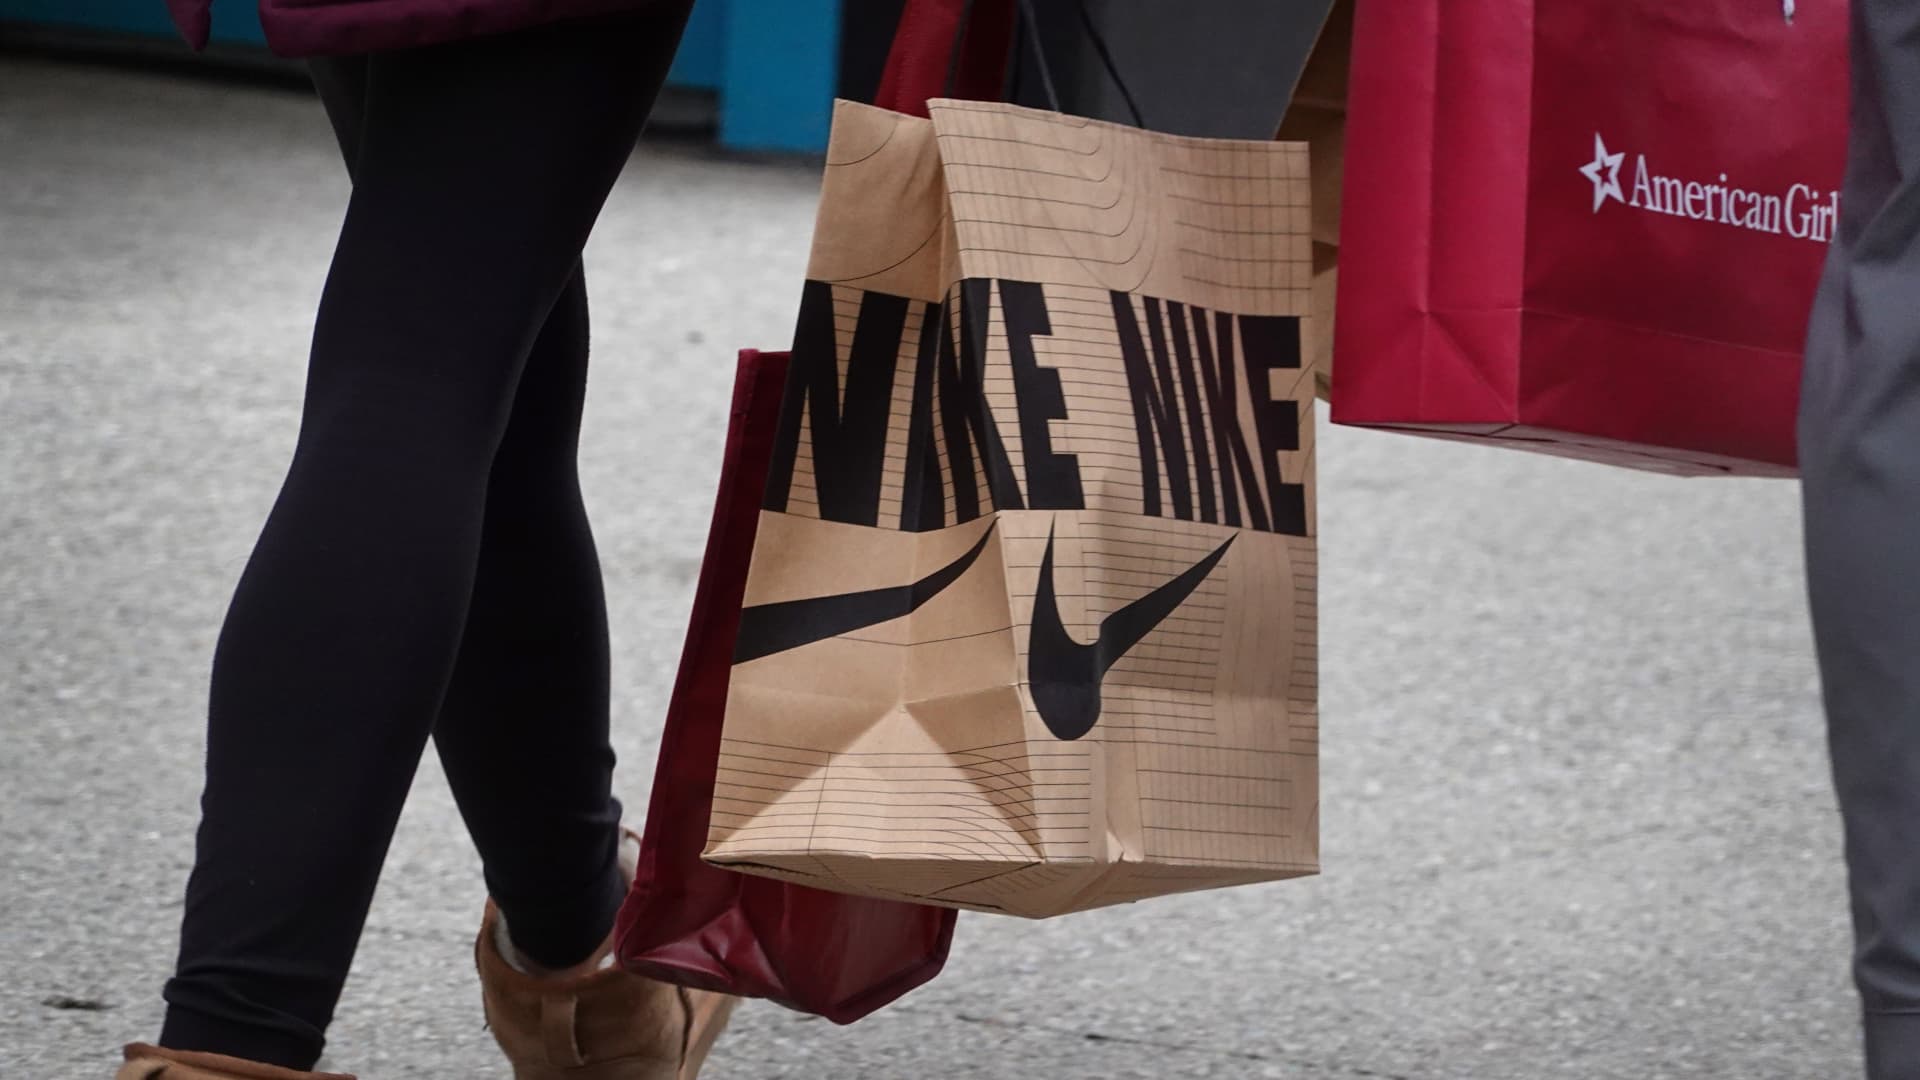 Nike, Foot Locker shares plunge on weak sales outlook